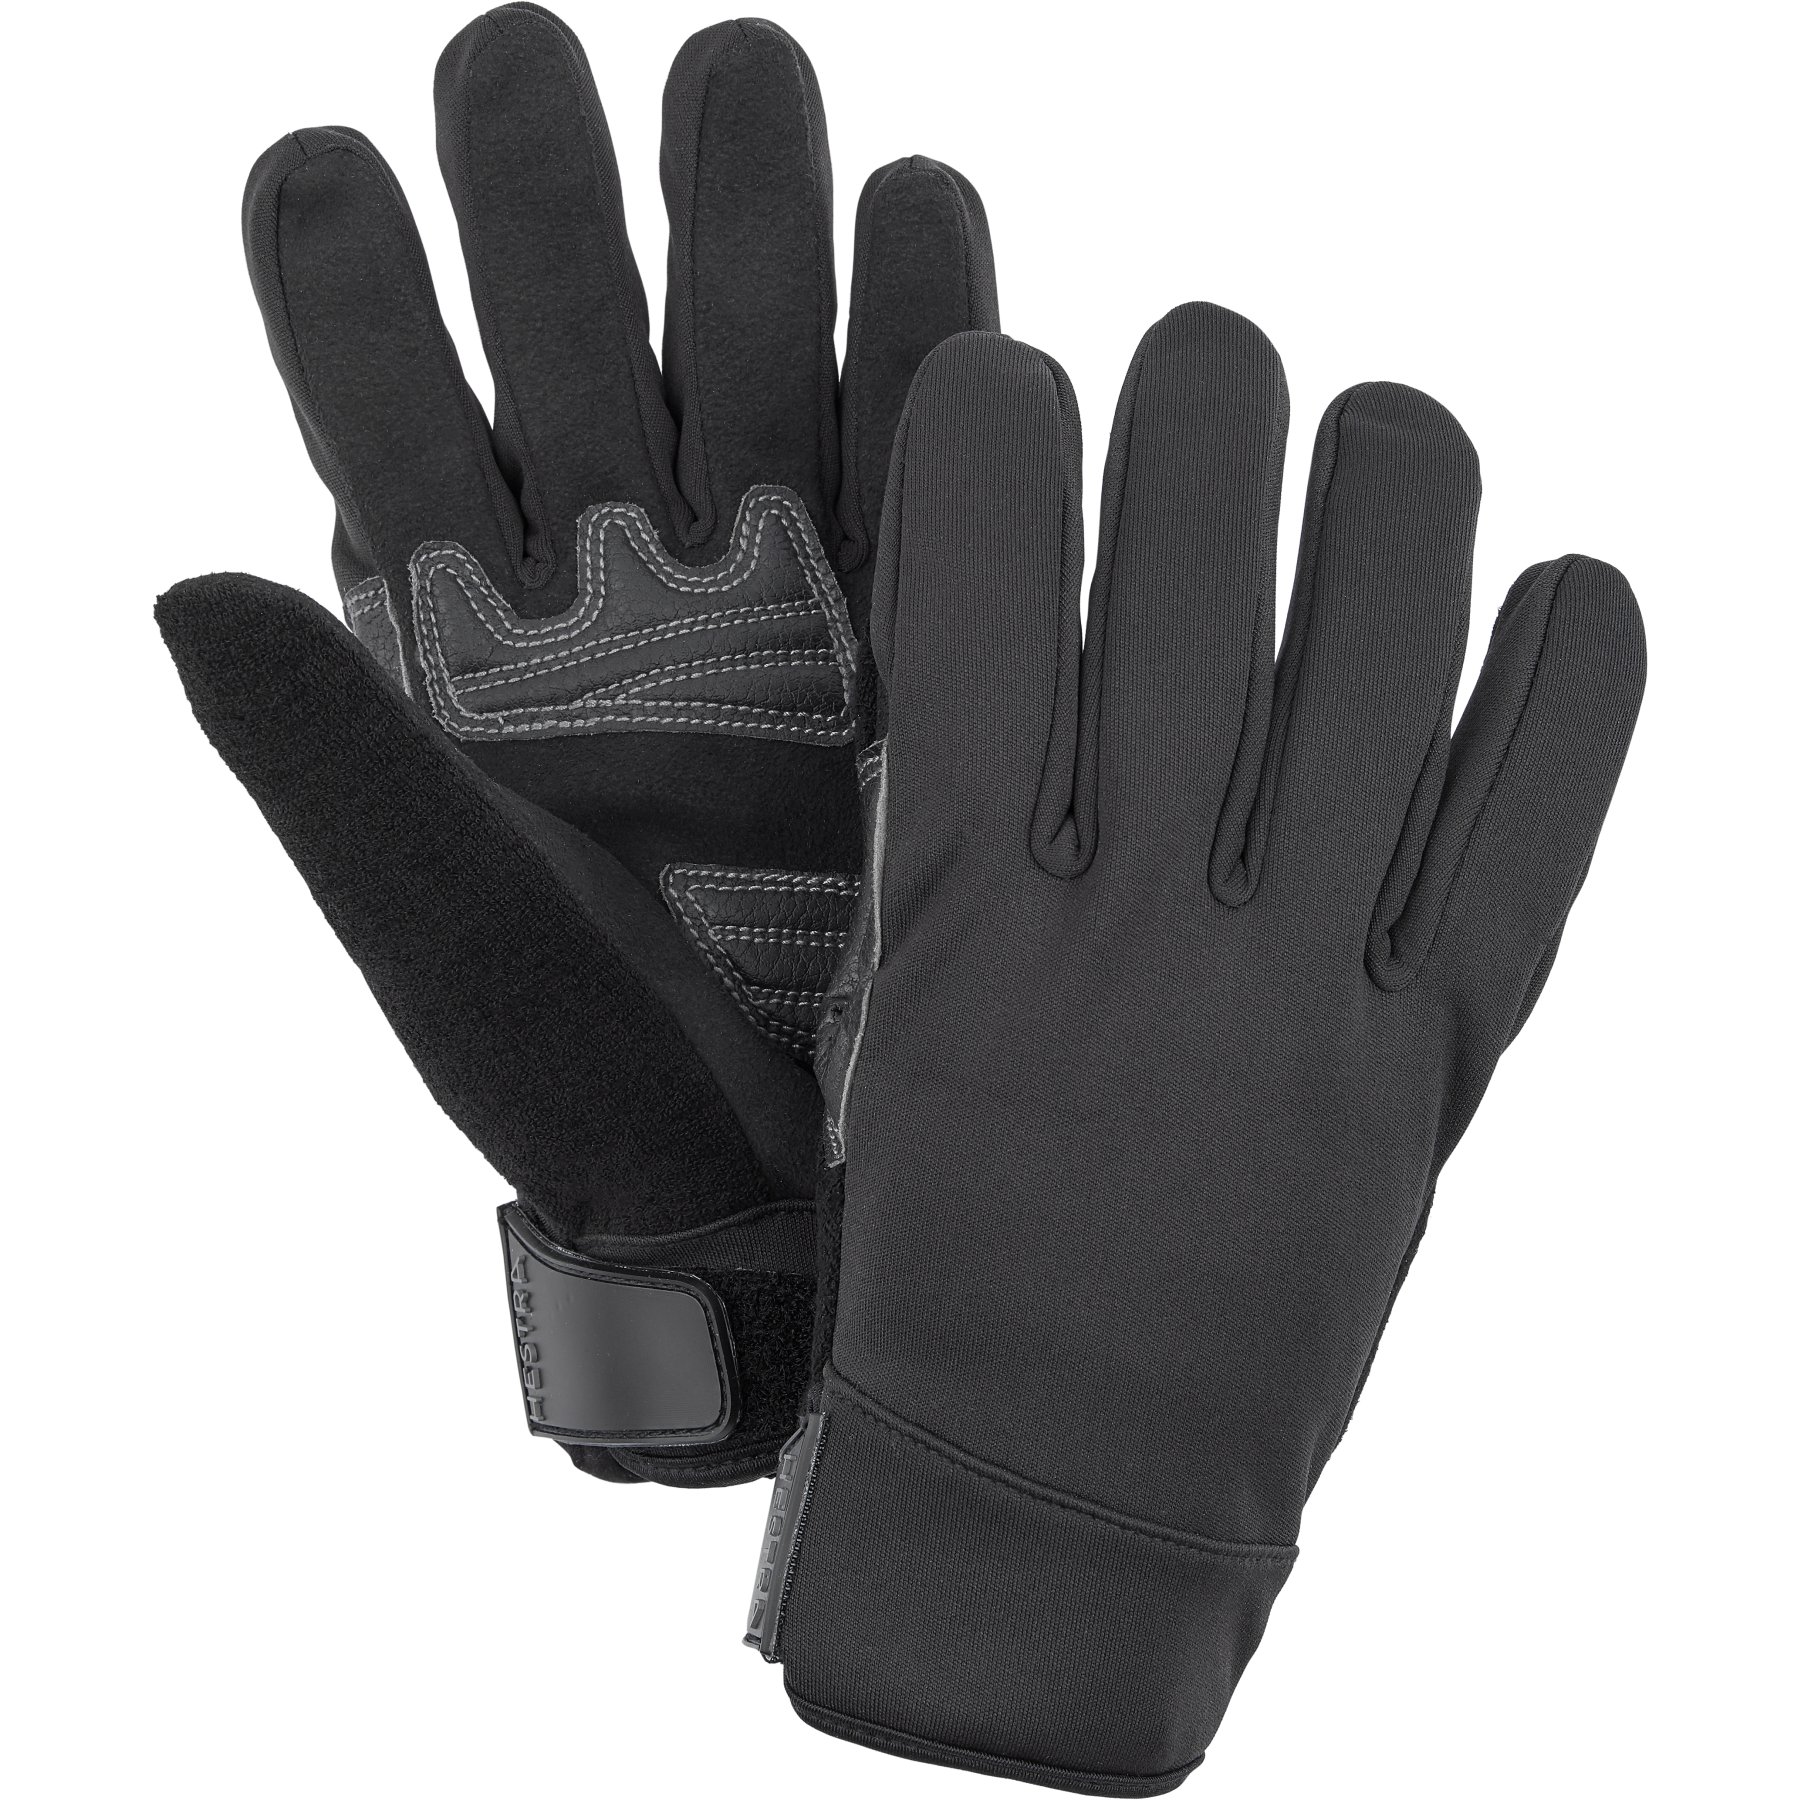 Productfoto van Hestra Tactility - 5 Vinger Handschoenen - black / black